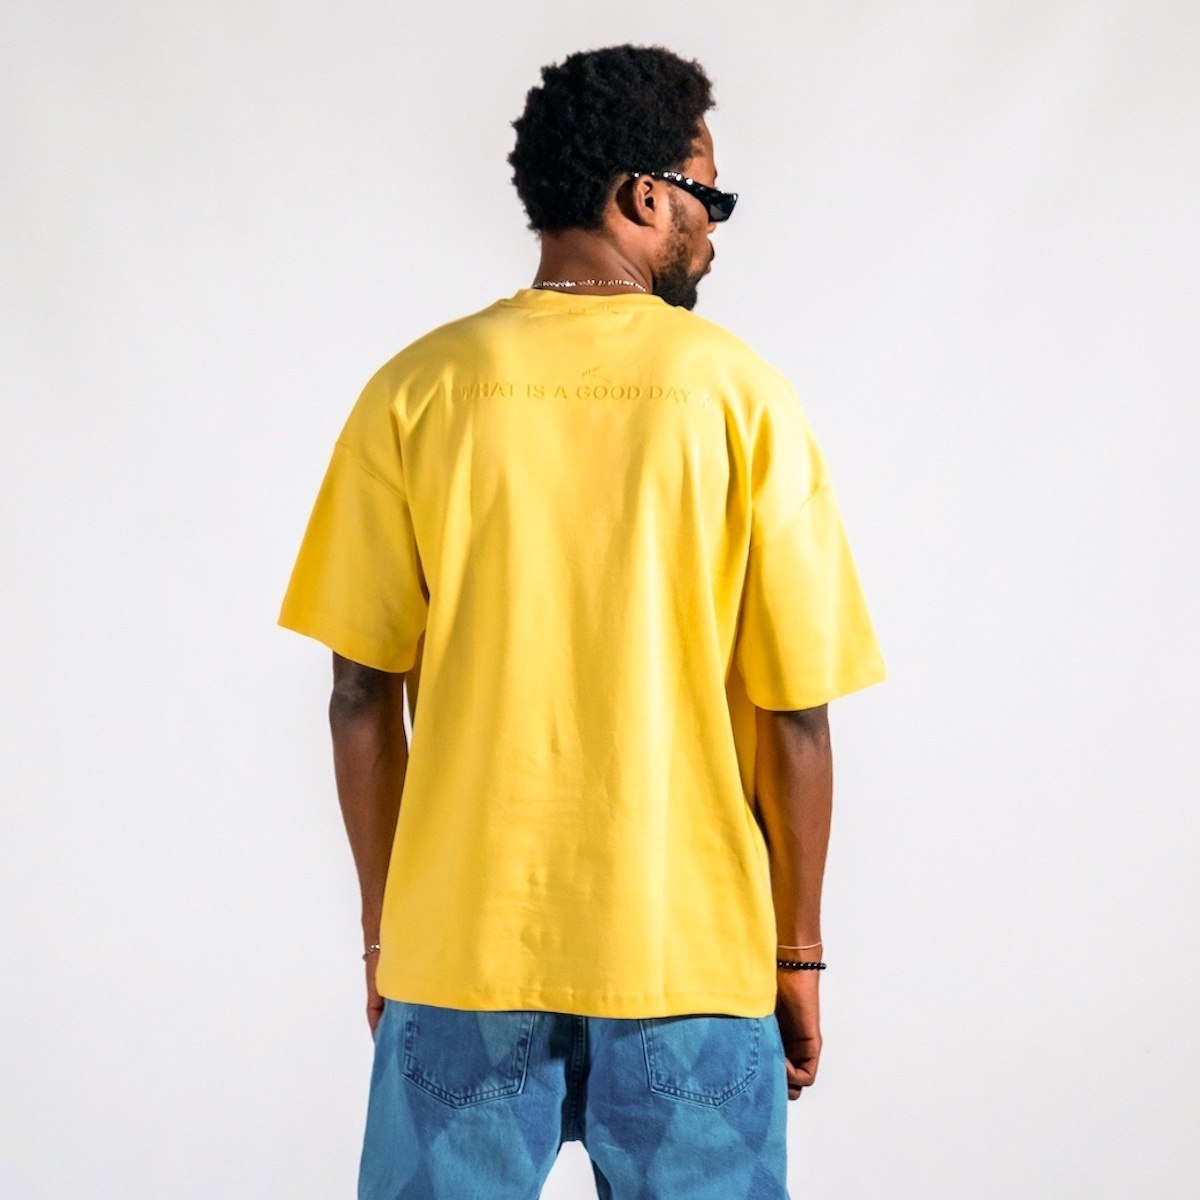 "Freiheit" Herren Bedrucktes Oversize T-Shirt aus dickem Stoff in Gelb | Martin Valen